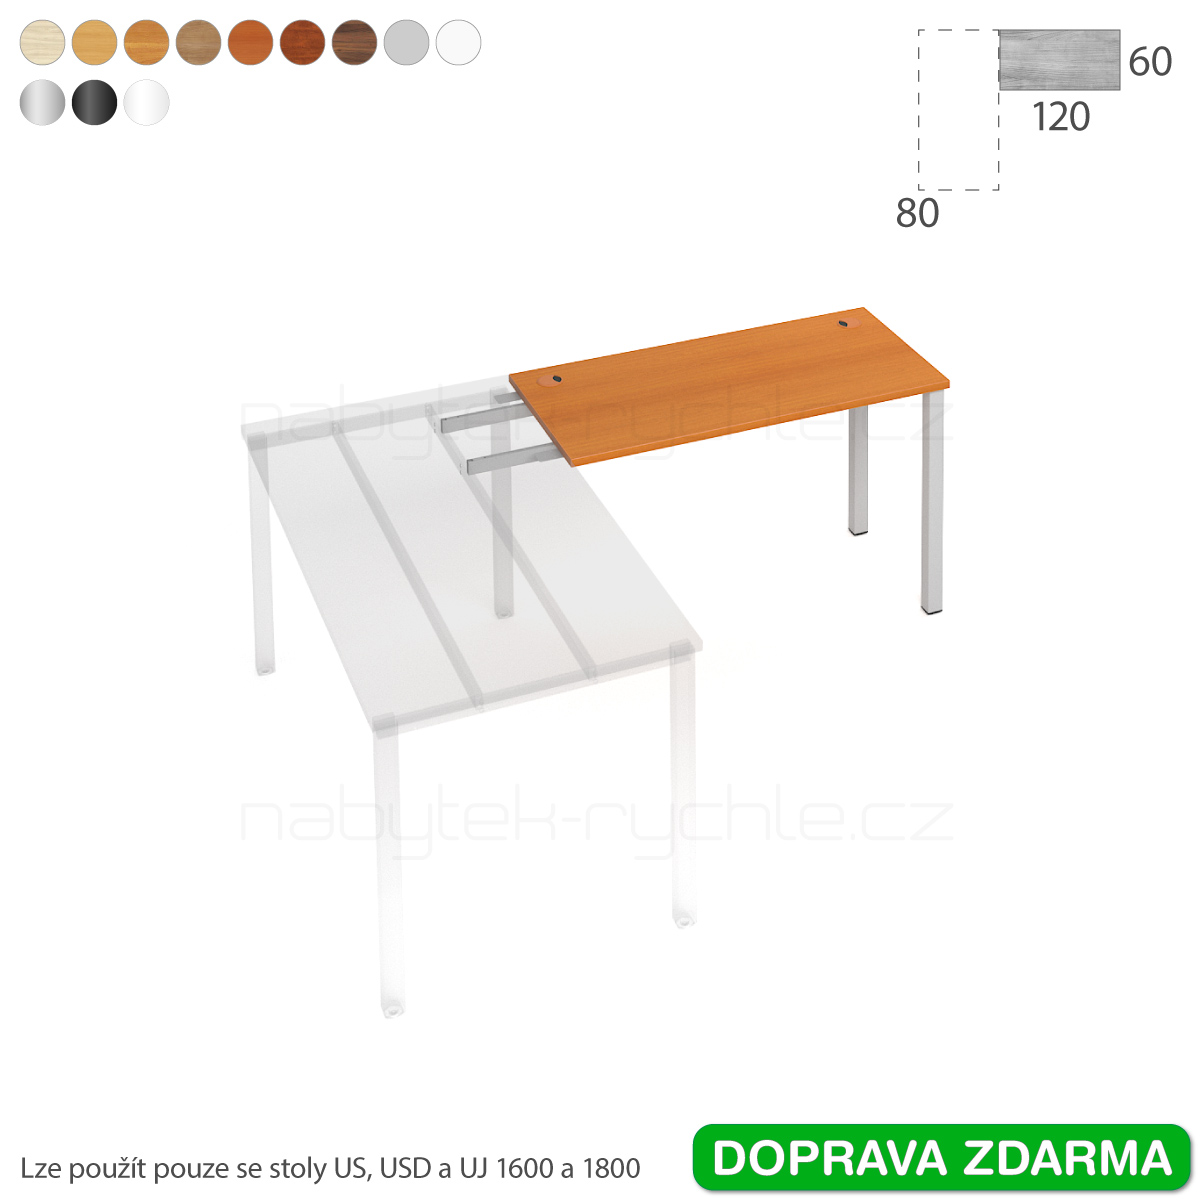 UE 1200 RU Hobis UNI - Stůl řetězící do úhlu 120 x 60